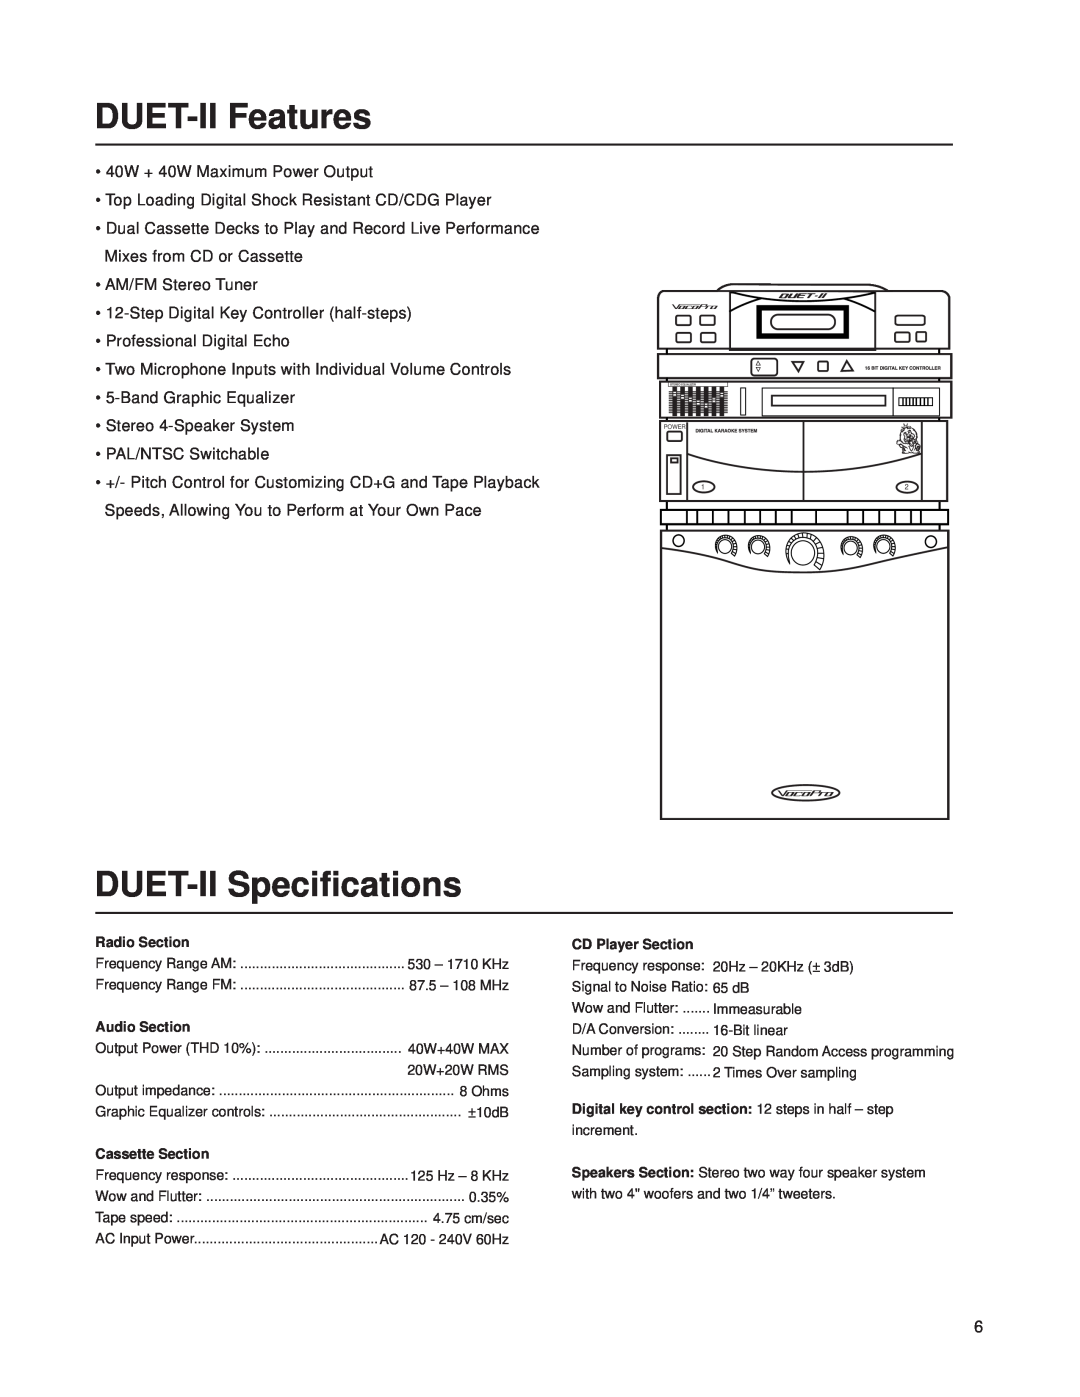 VocoPro Cassette Deck owner manual DUET-IIFeatures, DUET-IISpecifications 